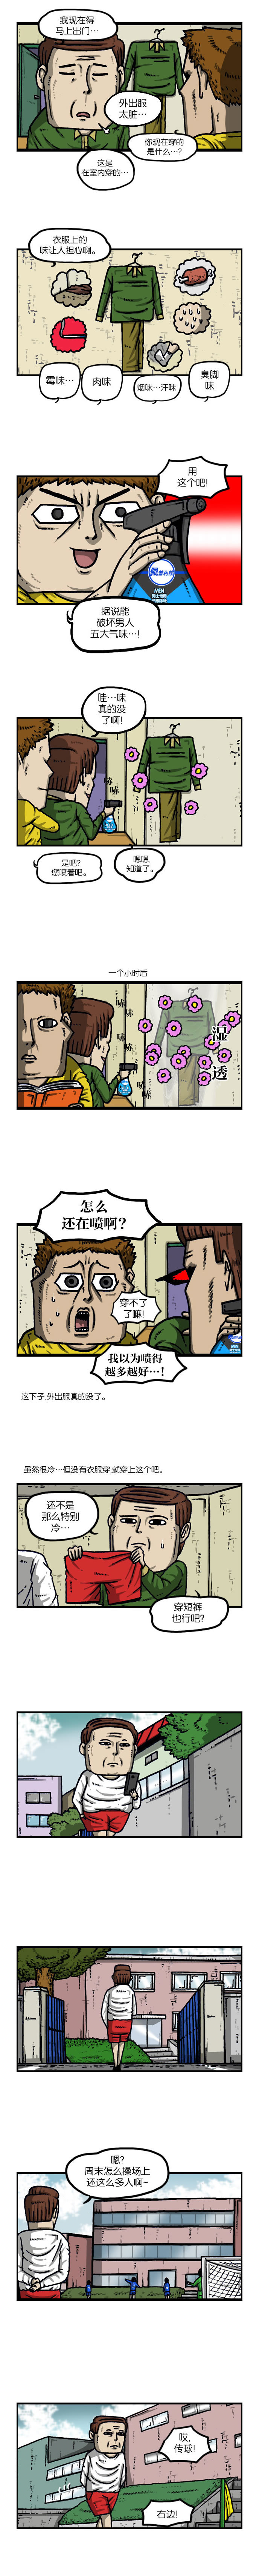 脑洞搞笑漫画 赵石的故事 球王铁旺 哔哩哔哩